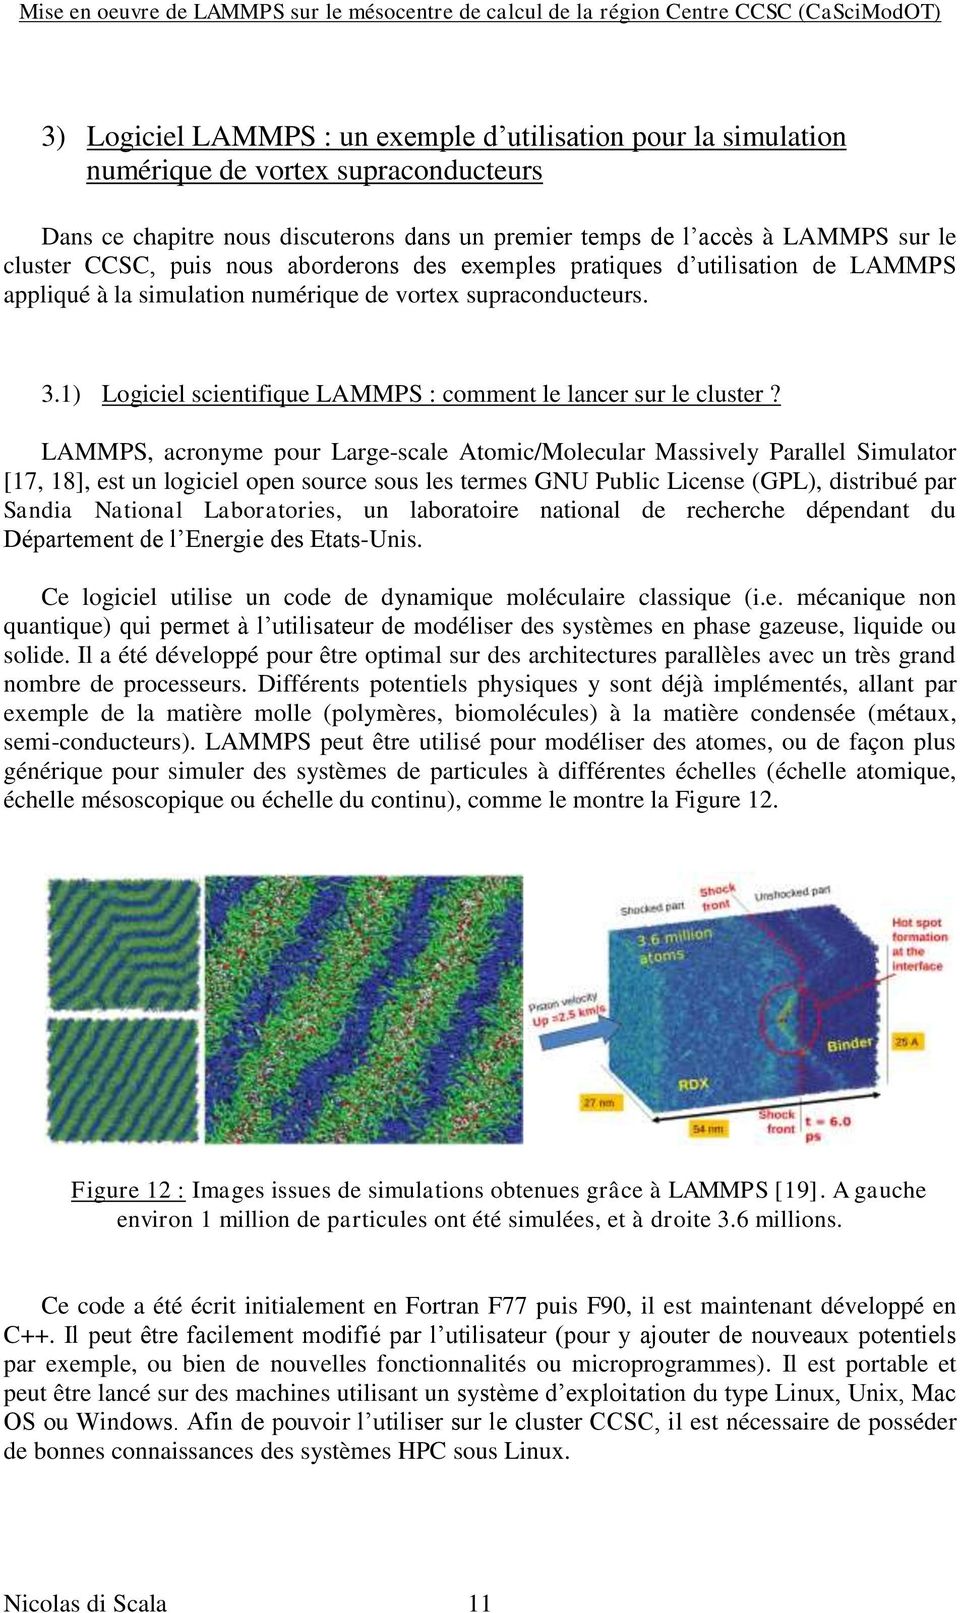 LAMMPS, acronyme pour Large-scale Atomic/Molecular Massively Parallel Simulator [17, 18], est un logiciel open source sous les termes GNU Public License (GPL), distribué par Sandia National